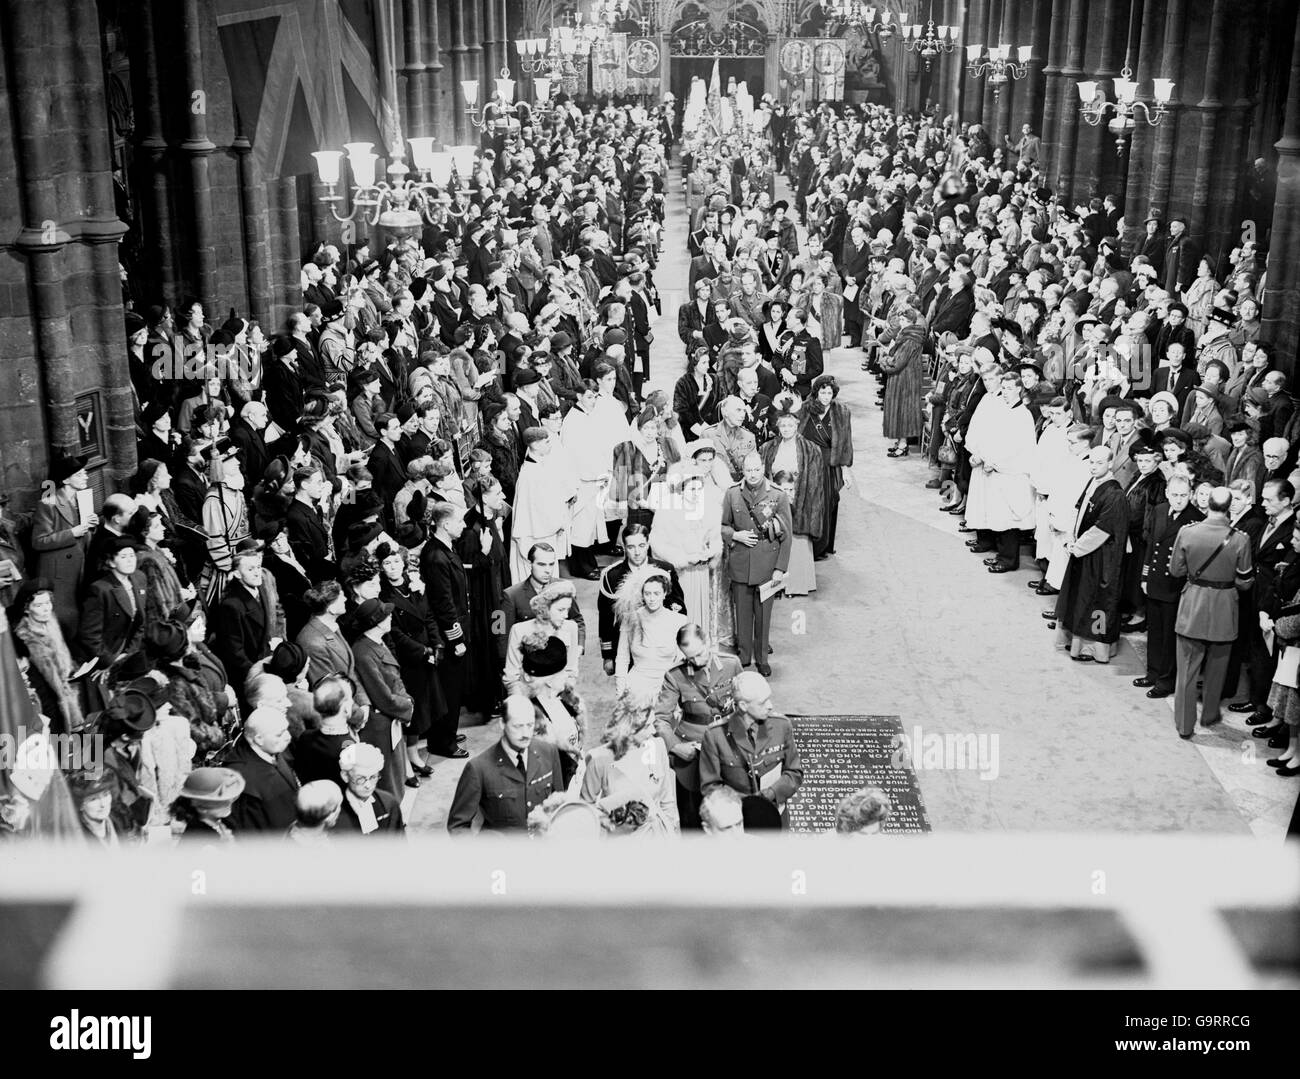 La procession royale descend l'allée à l'abbaye de Westminster Banque D'Images